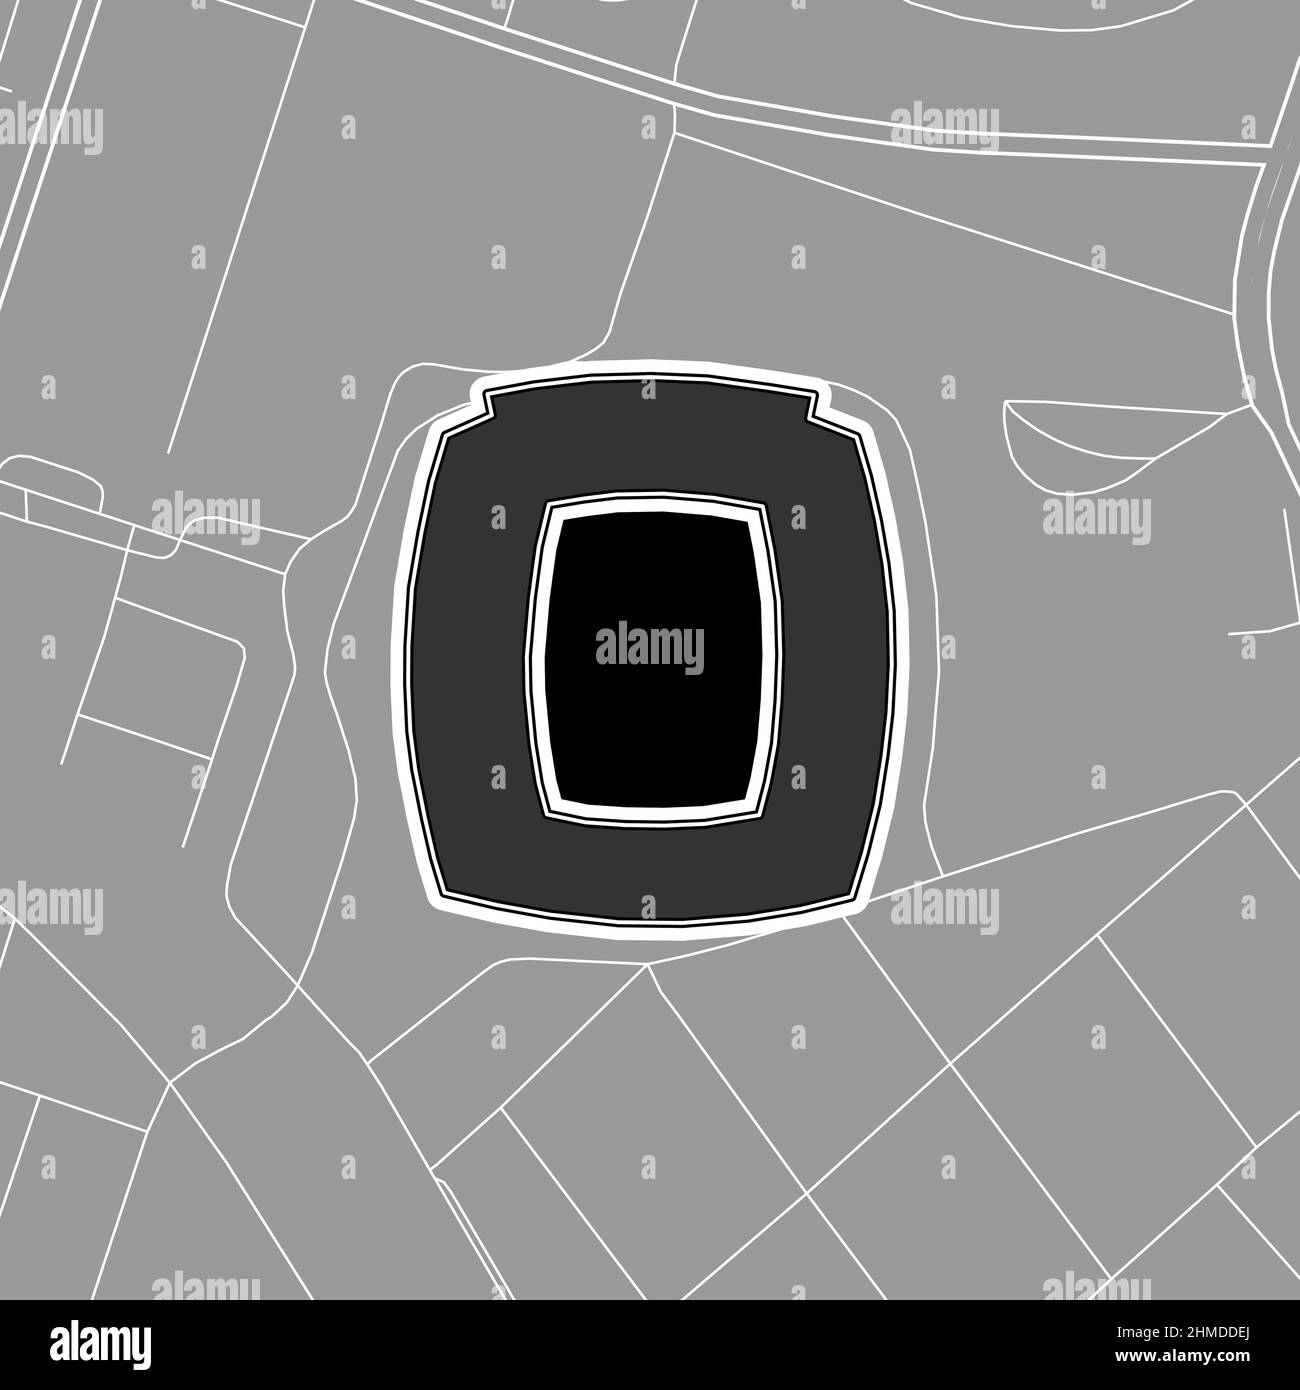 Johannesburg, Stadio MLB di baseball, mappa vettoriale. La mappa dello stadio di baseball è stata disegnata con aree bianche e linee per le strade principali, le strade laterali. Illustrazione Vettoriale